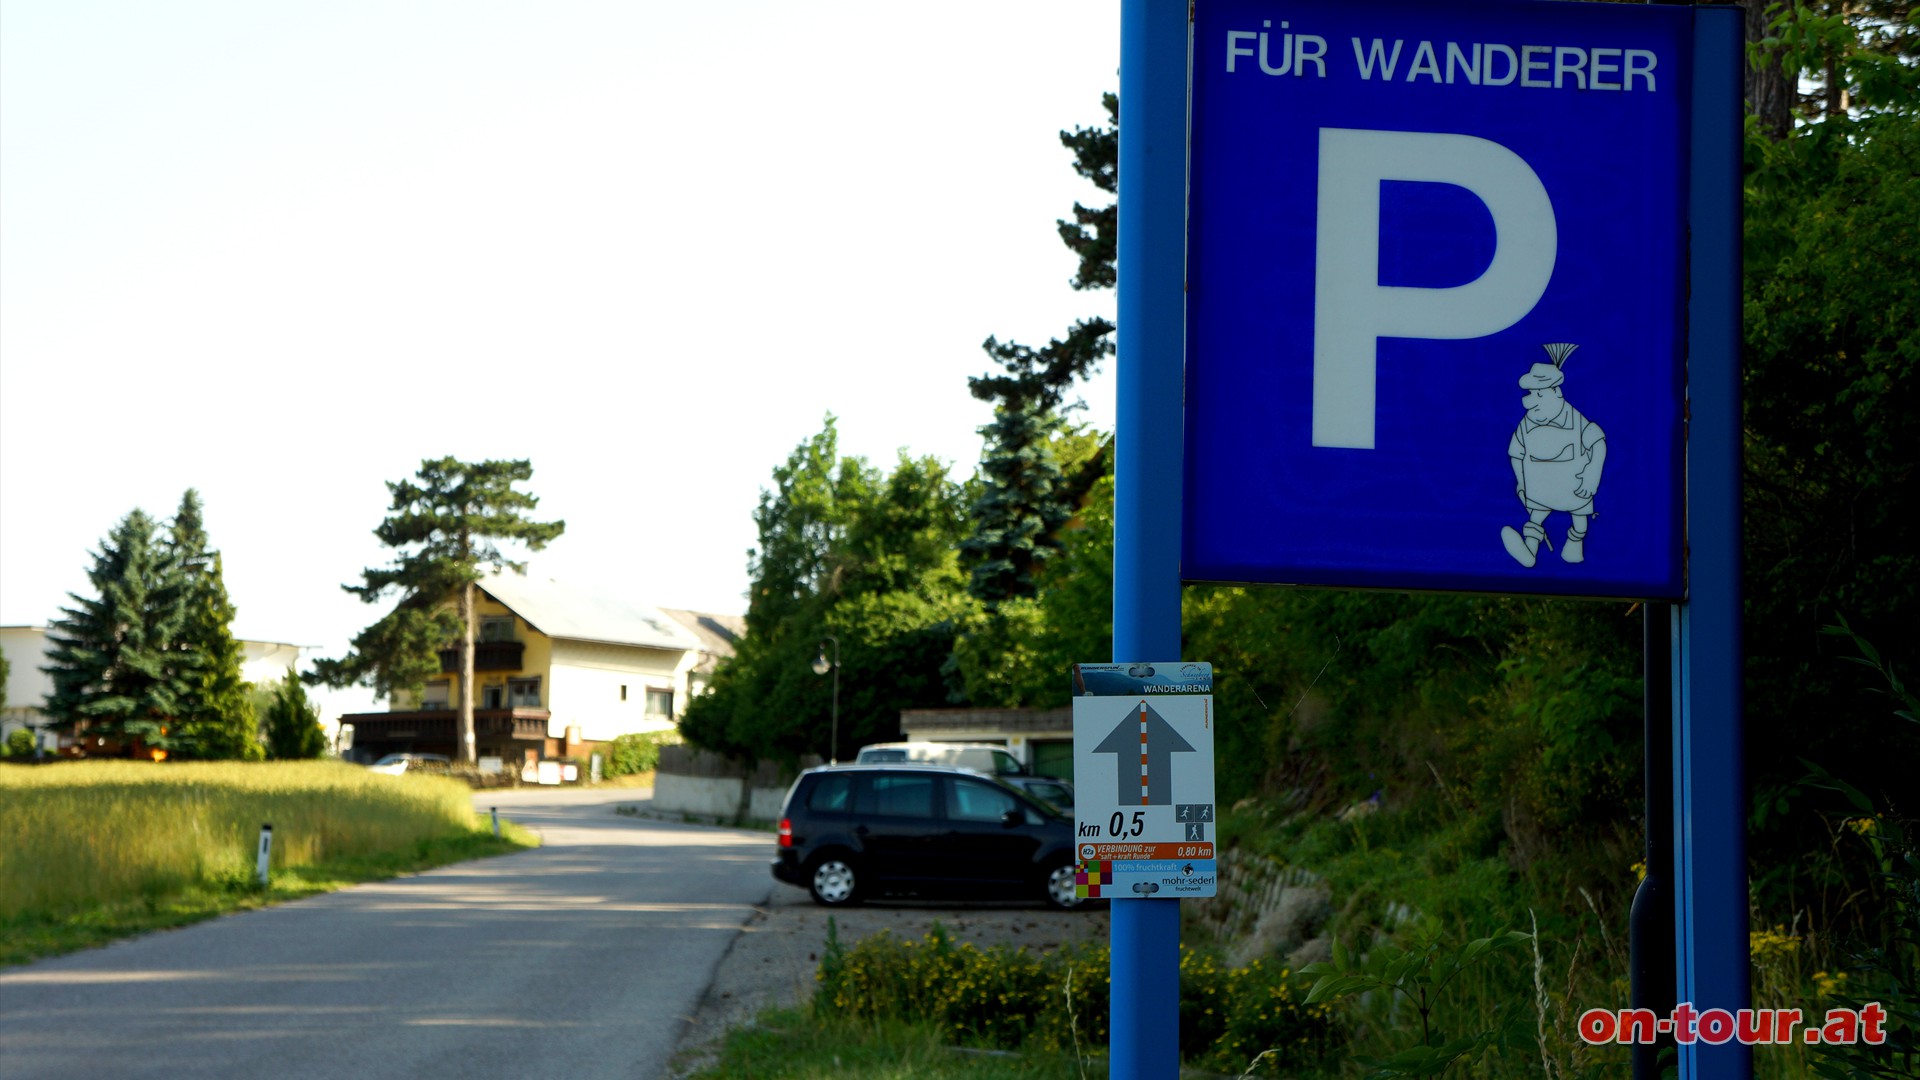  Falls als Tourausgangspunkt der Wandererparkplatz in Oberhflein gewhlt wurde, dann dorthin zurck.